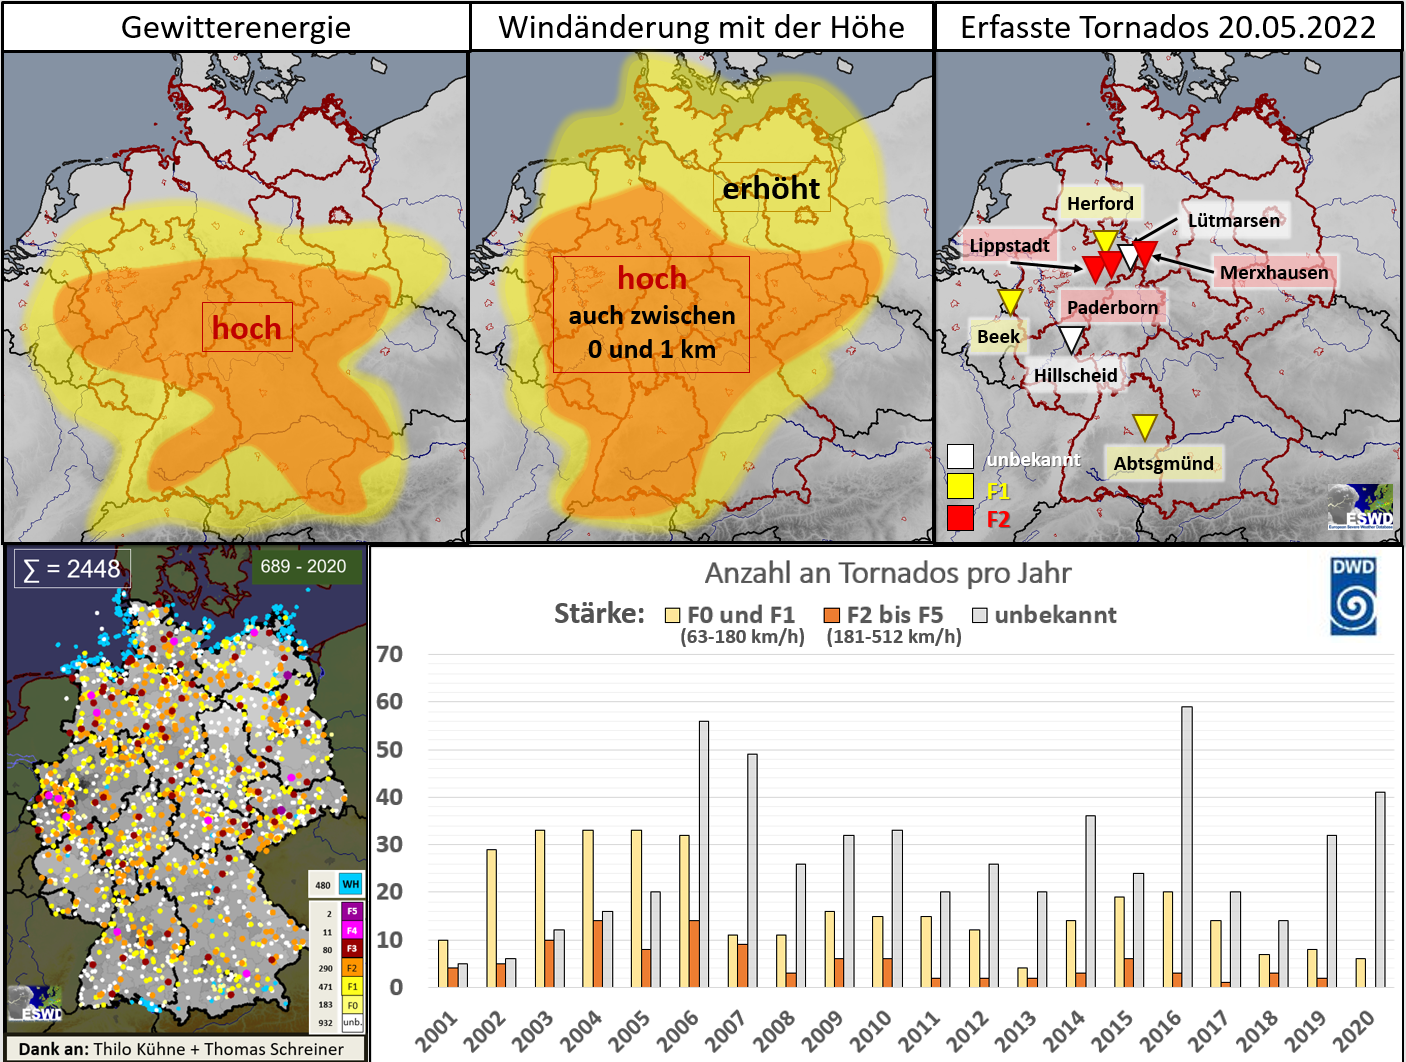 DWD Der Tornadoausbruch am 20.05.2022 Analyse und Einordnung 1